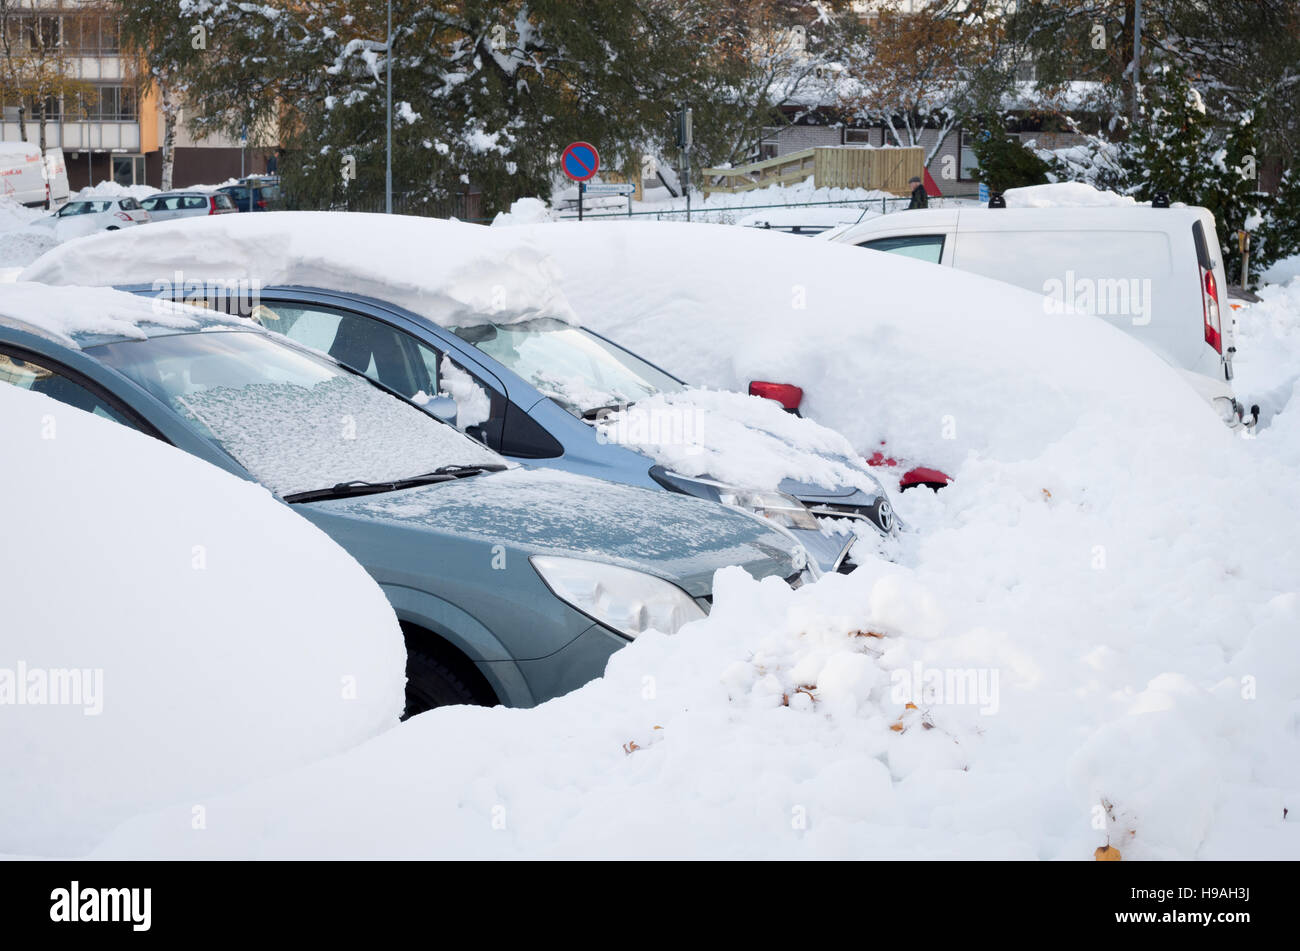 Los coches aparcados cubiertos de nieve después de una tormenta de nieve a principios de noviembre Foto de stock